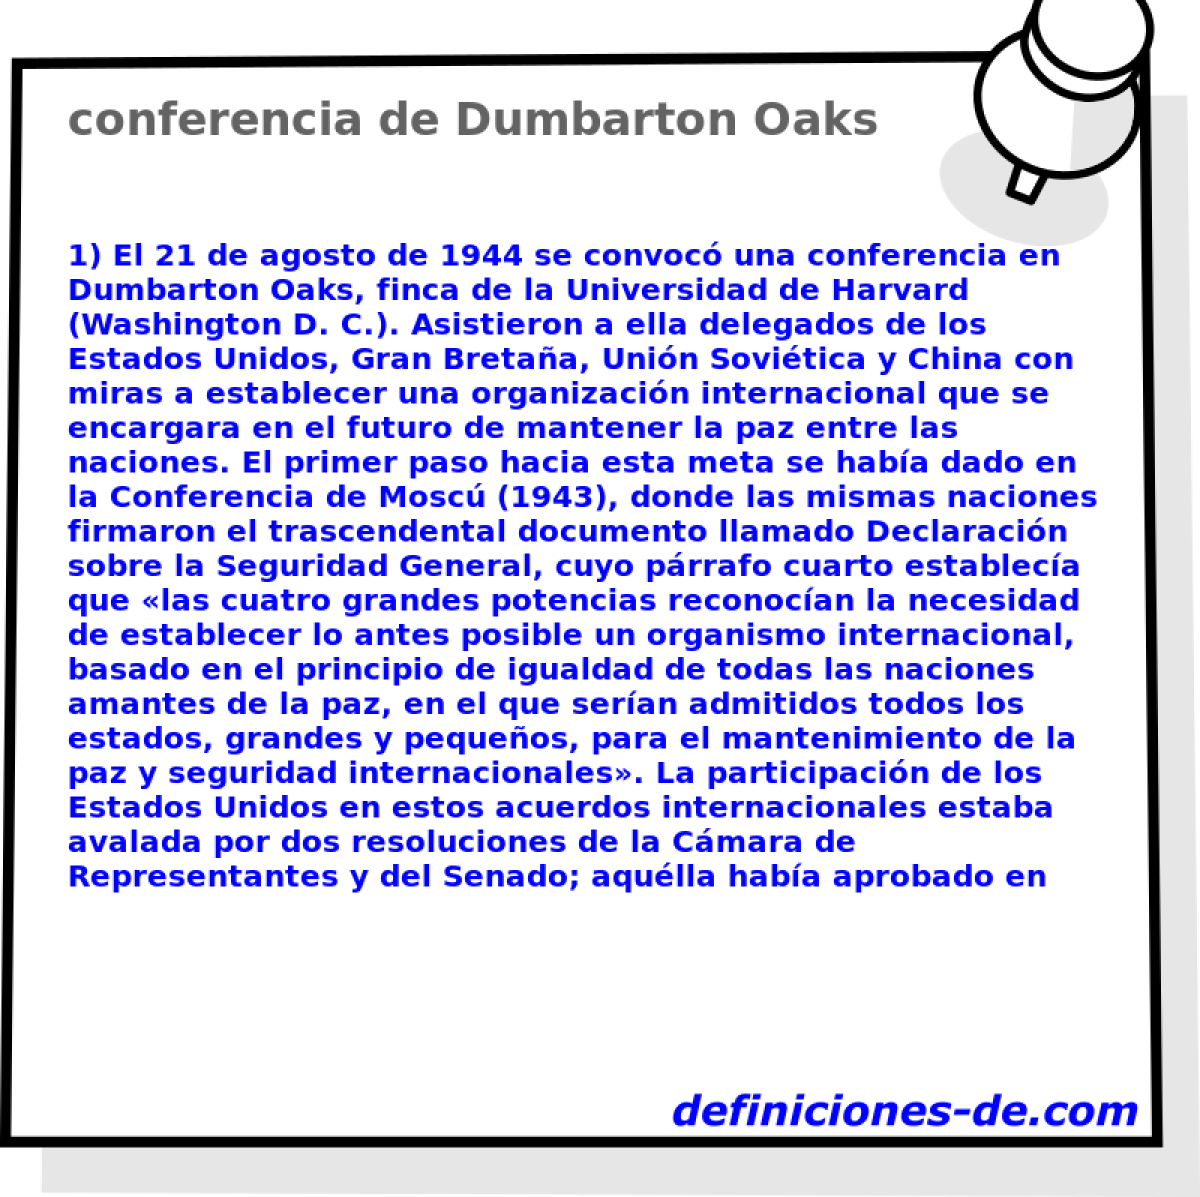 conferencia de Dumbarton Oaks 